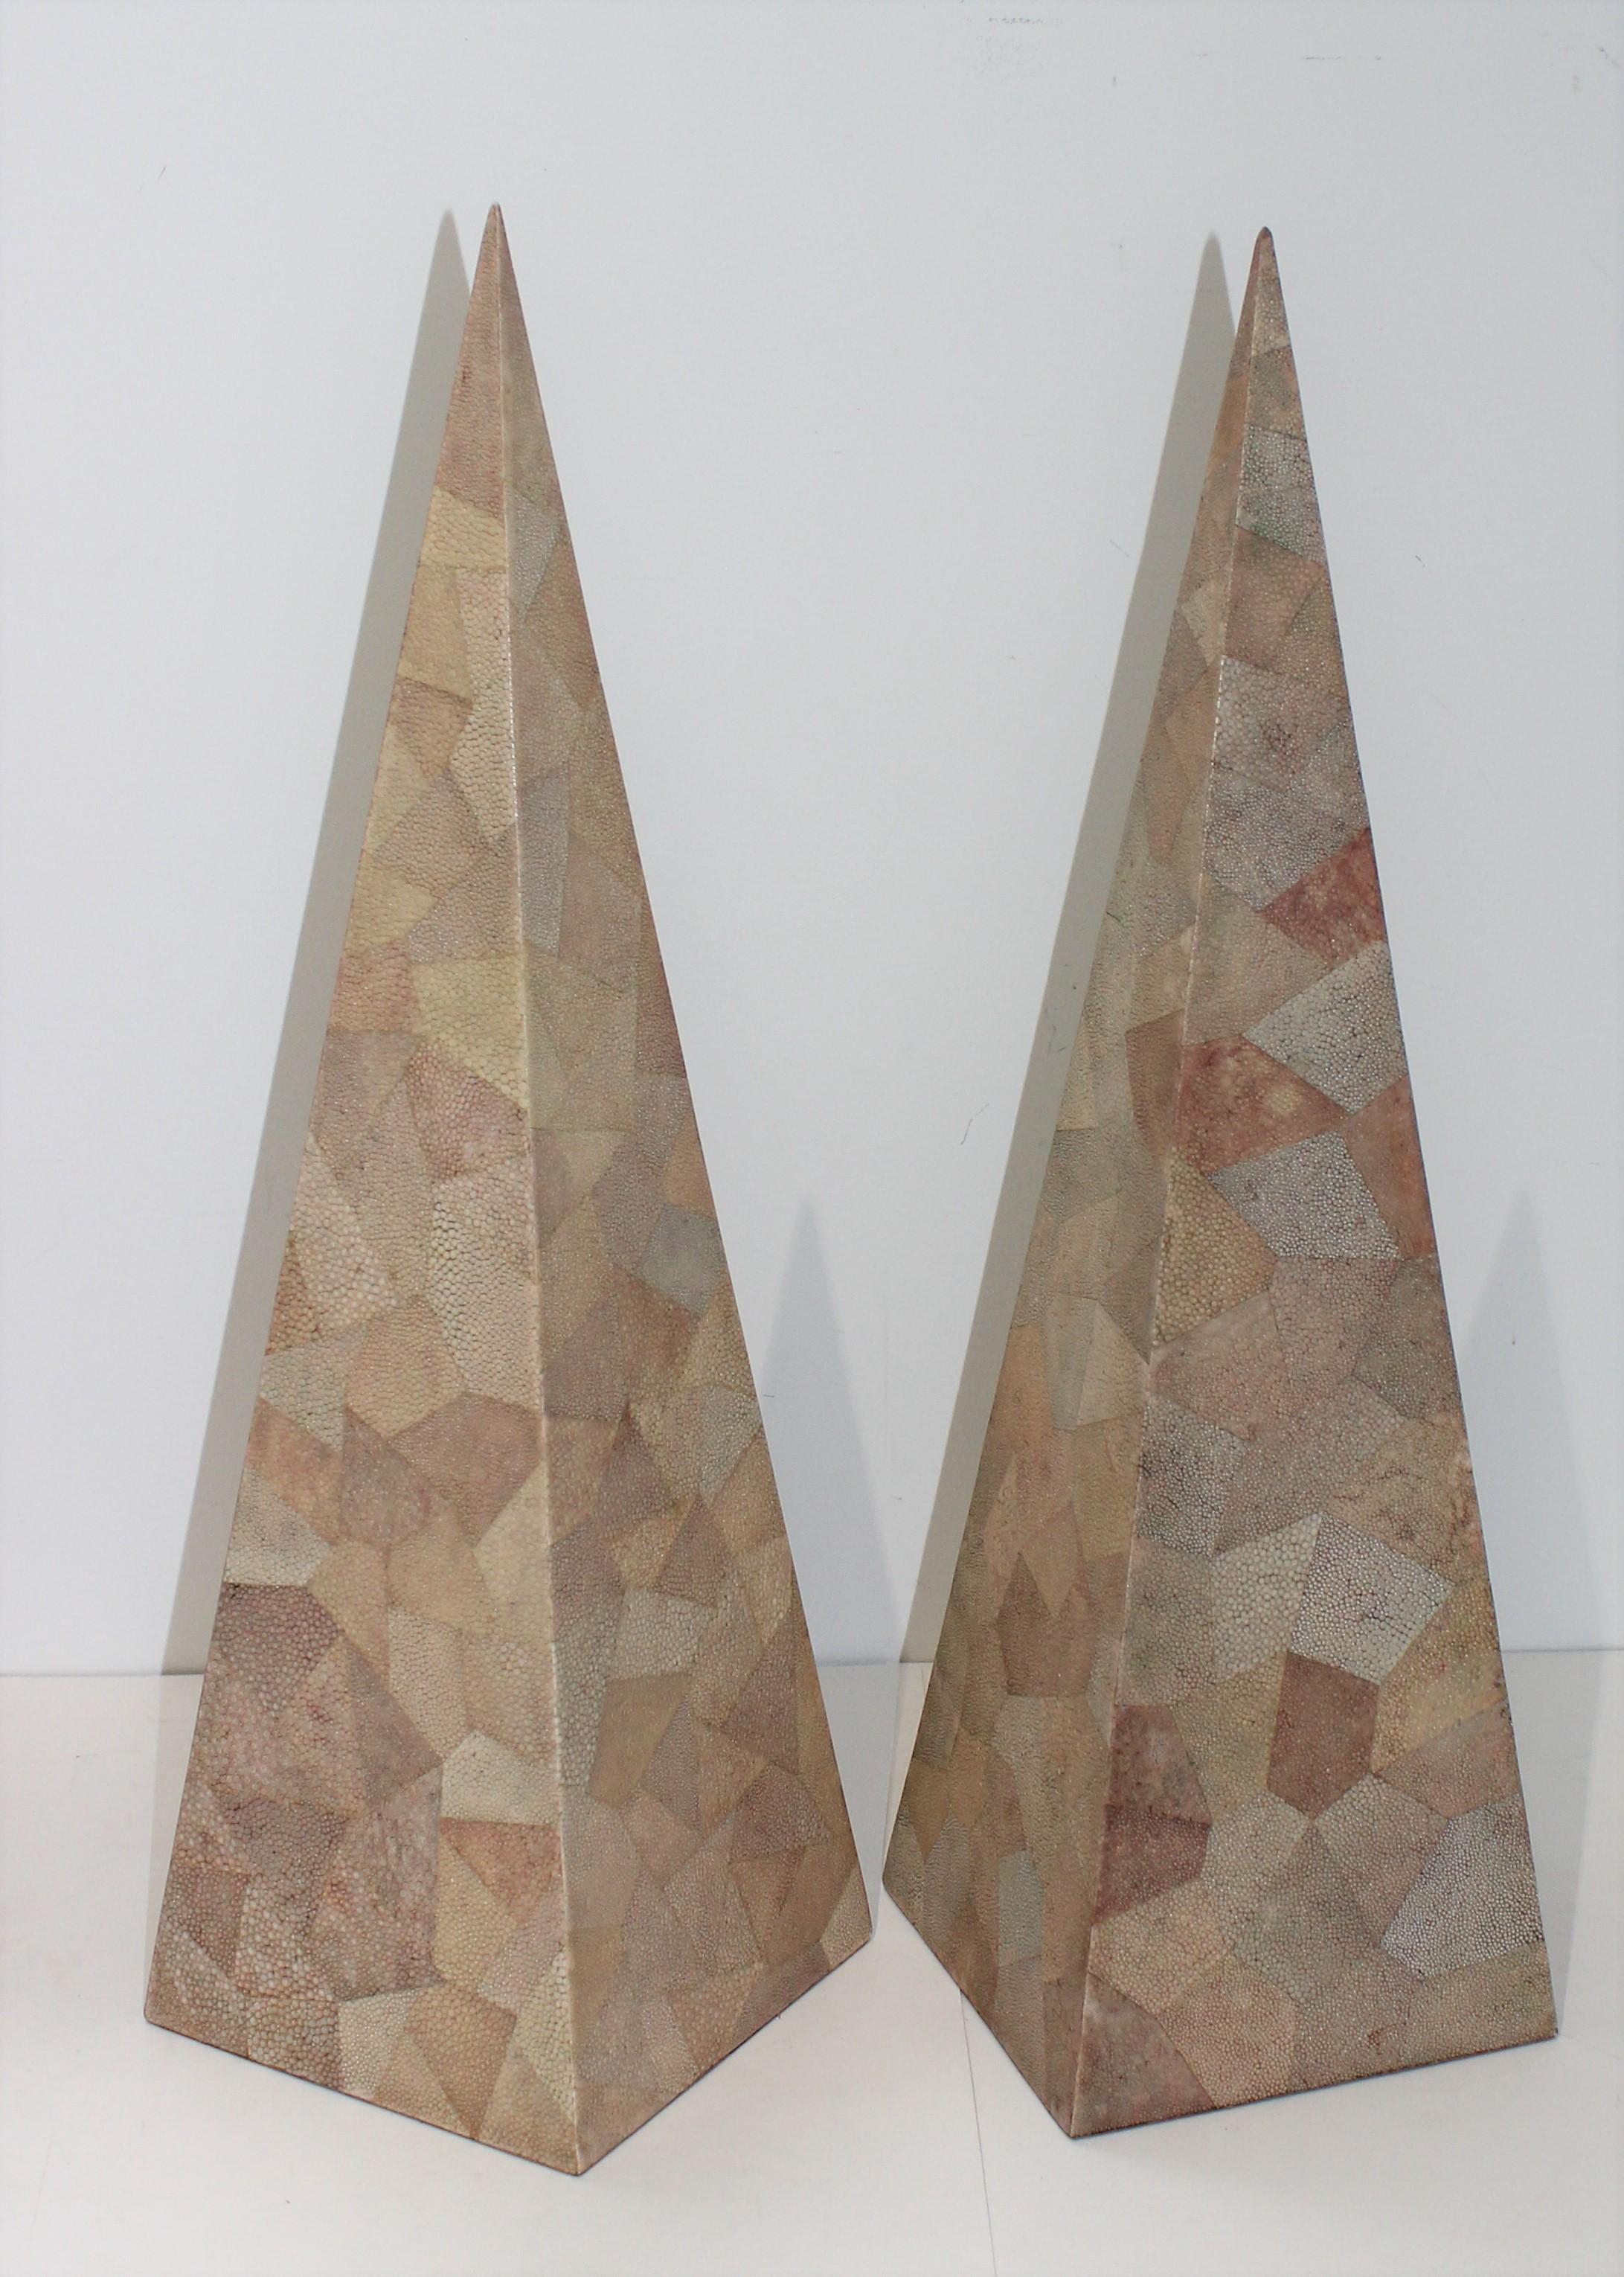 Obélisques en galuchat tessellé de Maitland-Smith - un ensemble de 2.

Notez qu'il ne s'agit pas exactement de la même taille :
24